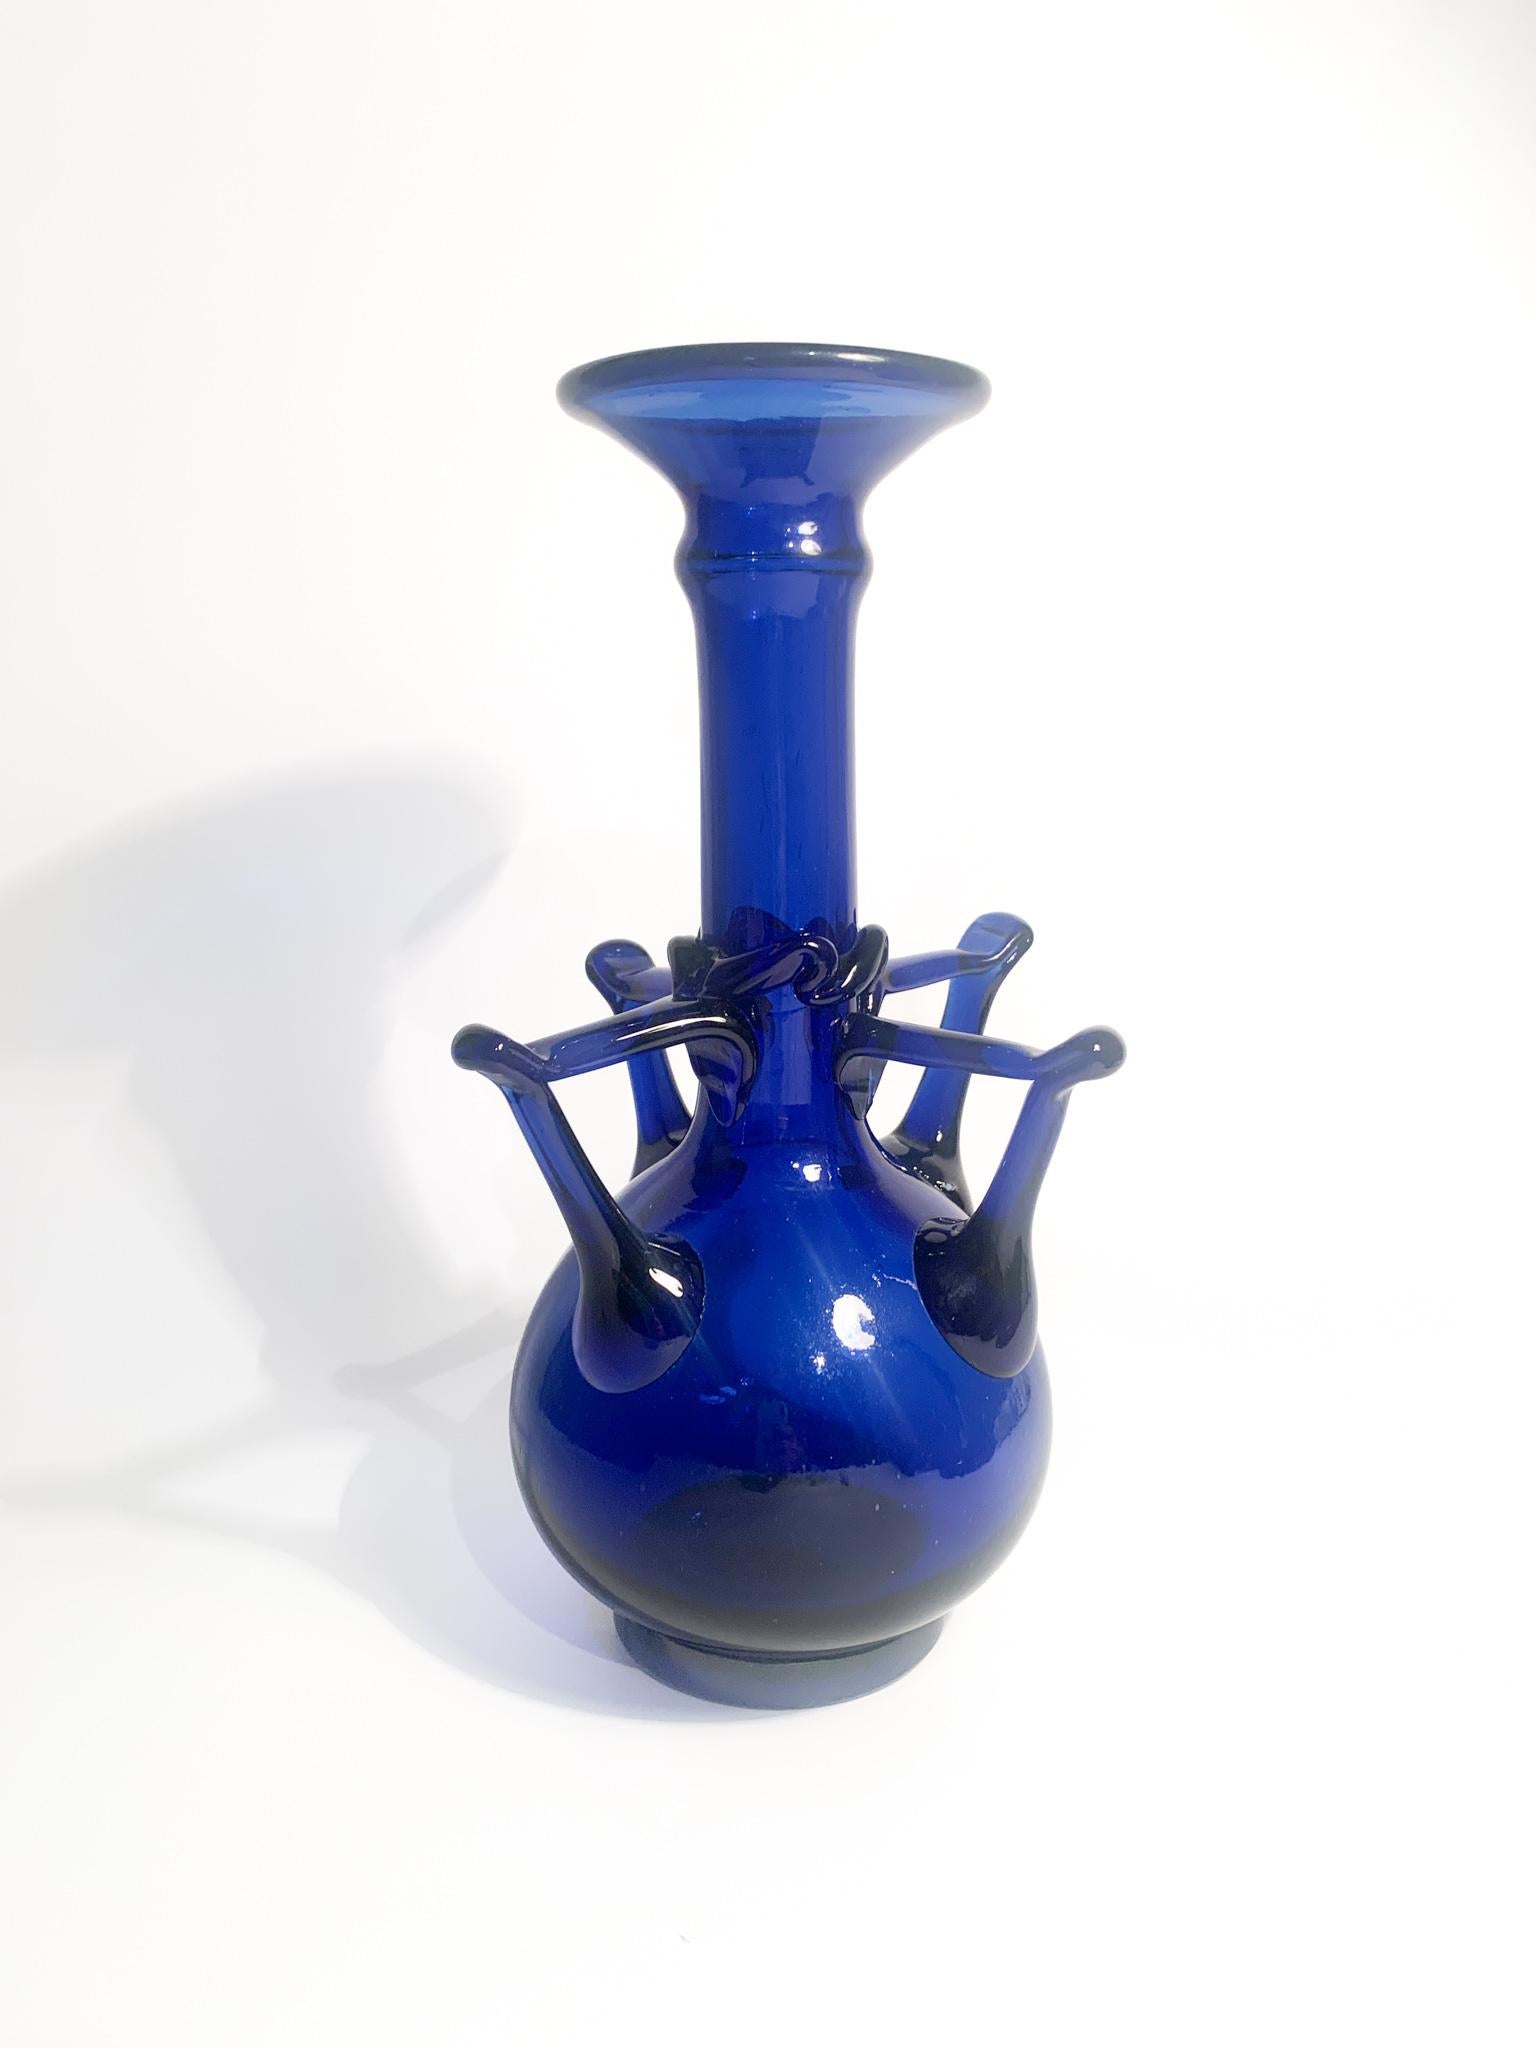 Vase aus blauem Murano-Glas, deren Entstehung den Gebrüdern Toso in den 1940er Jahren zugeschrieben wird

Ø cm 16 h cm 28,5

Barovier&Toso ist eine Glasmanufaktur, die im 20. Jahrhundert für ihre handgefertigten Kollektionen aus dekorativem